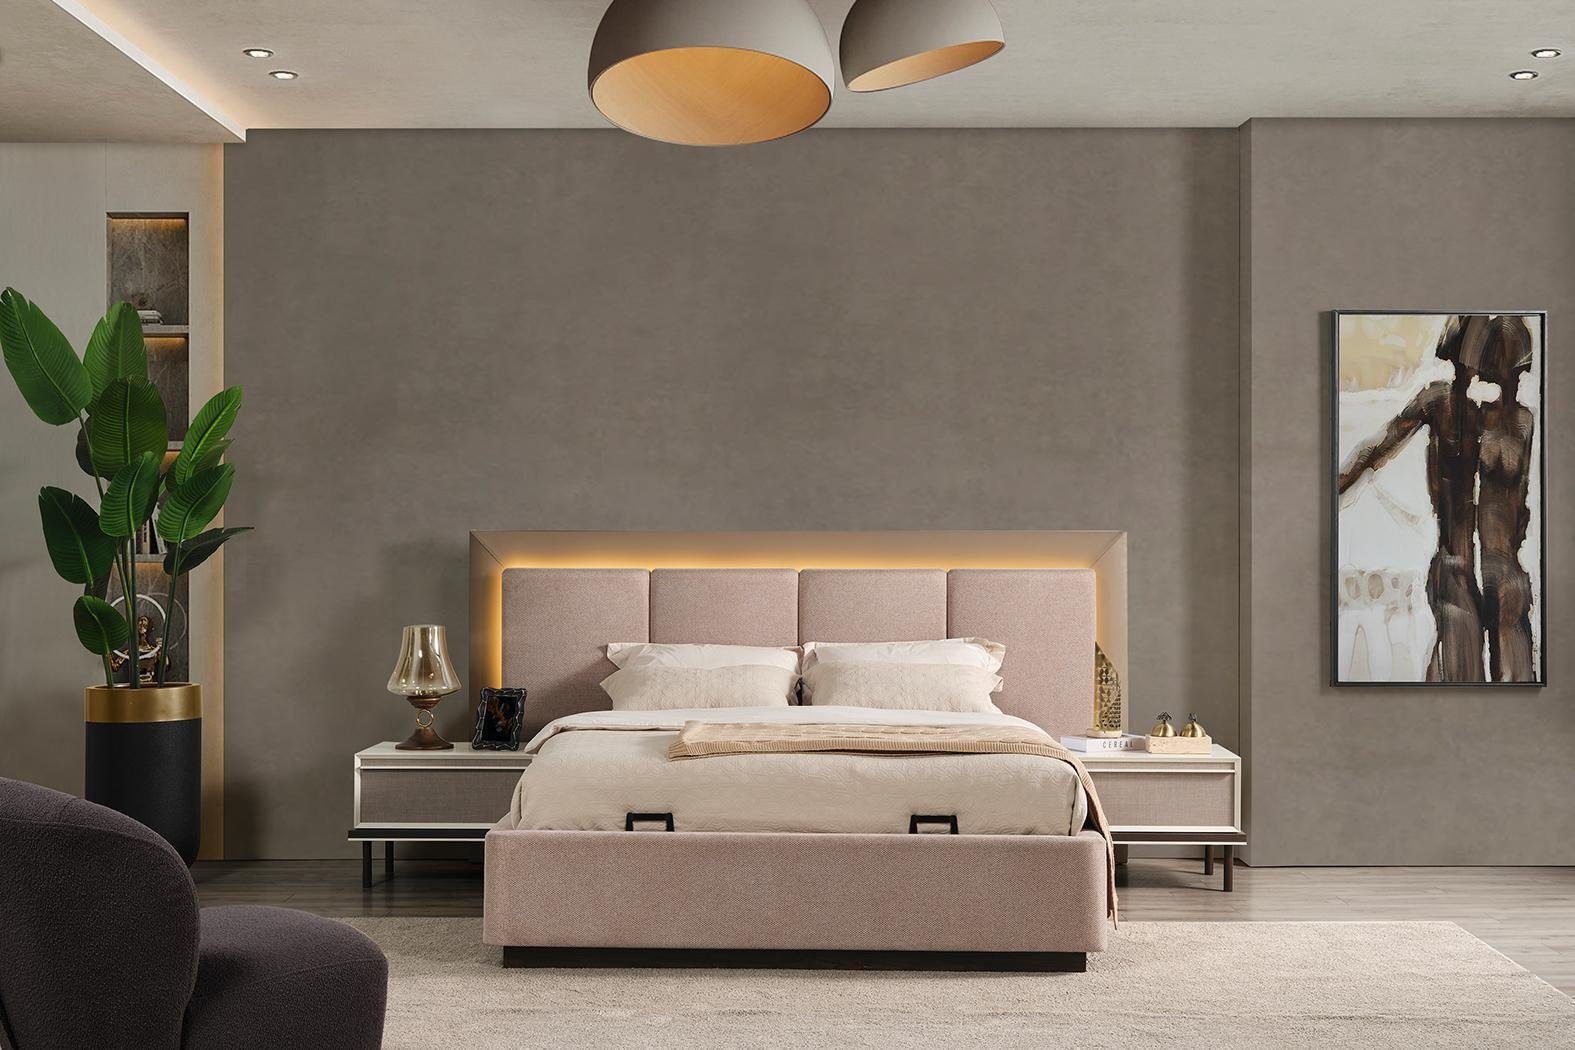 JVmoebel Schlafzimmer-Set Schlafzimmer Set Bett Schminktisch 5tlgDesign, 2xNachttische Europe In Luxus neu Made